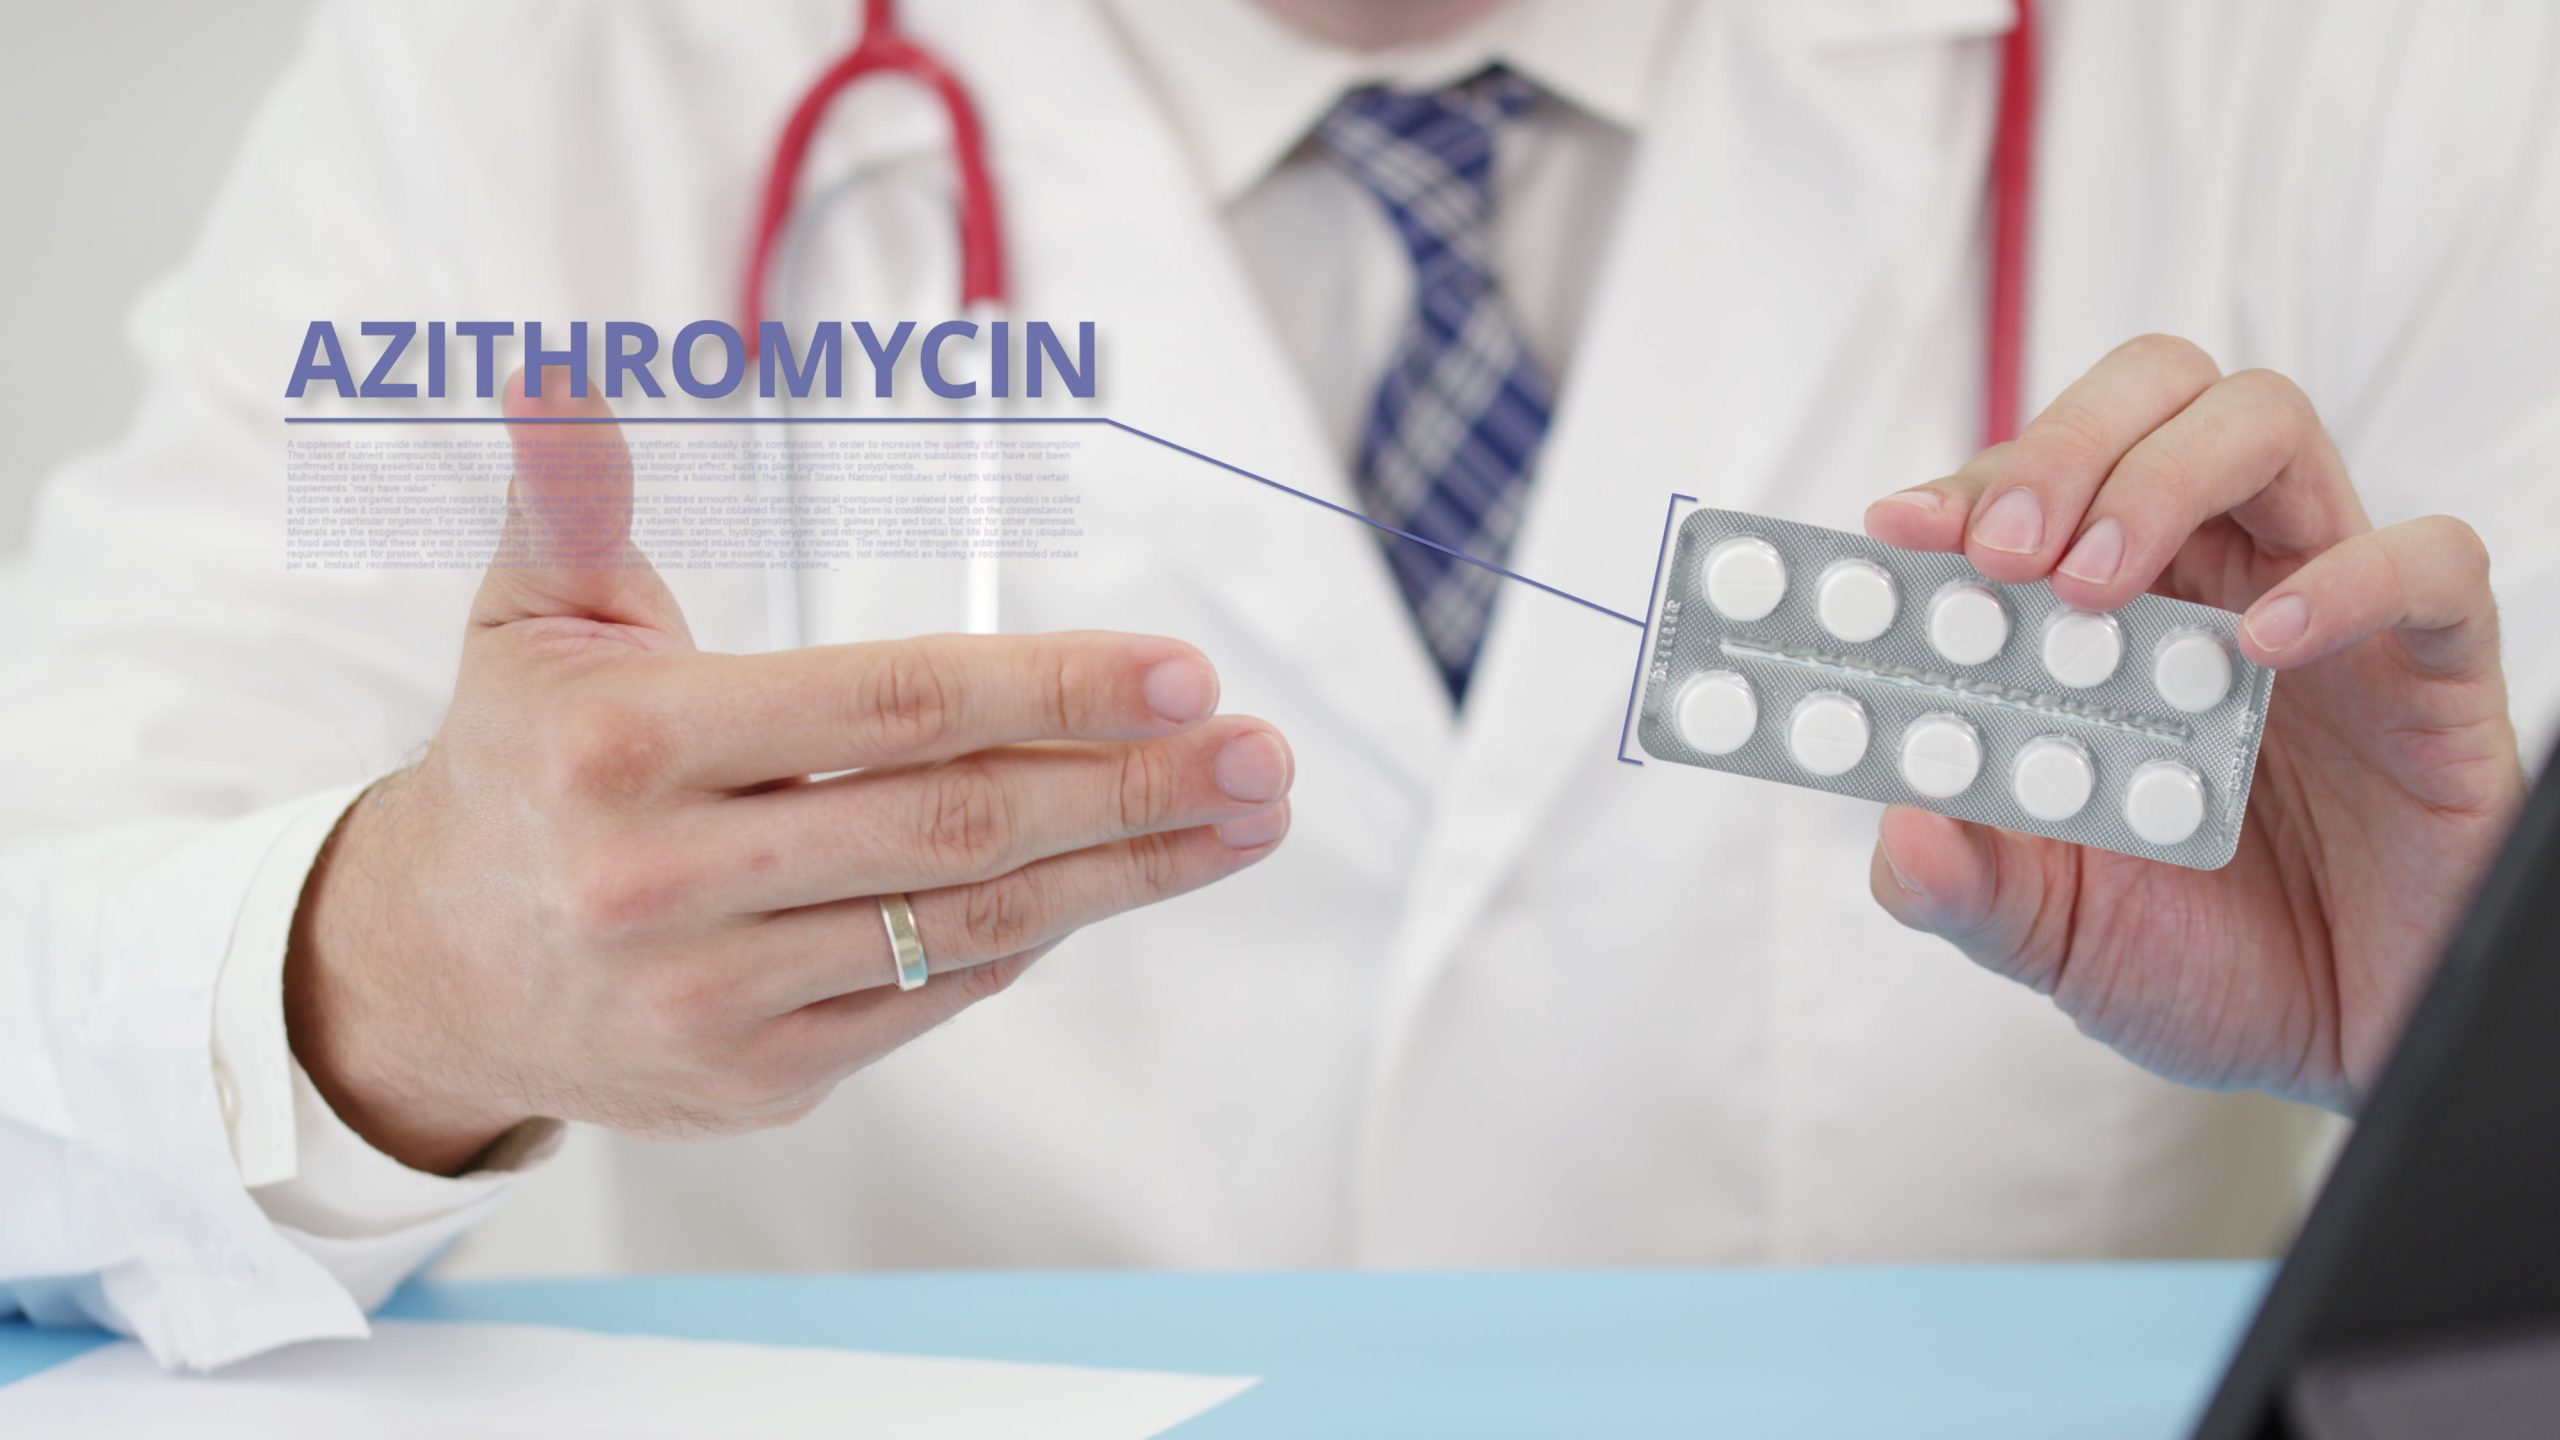 How Long Do My Meds Last? A Look at Azithromycin